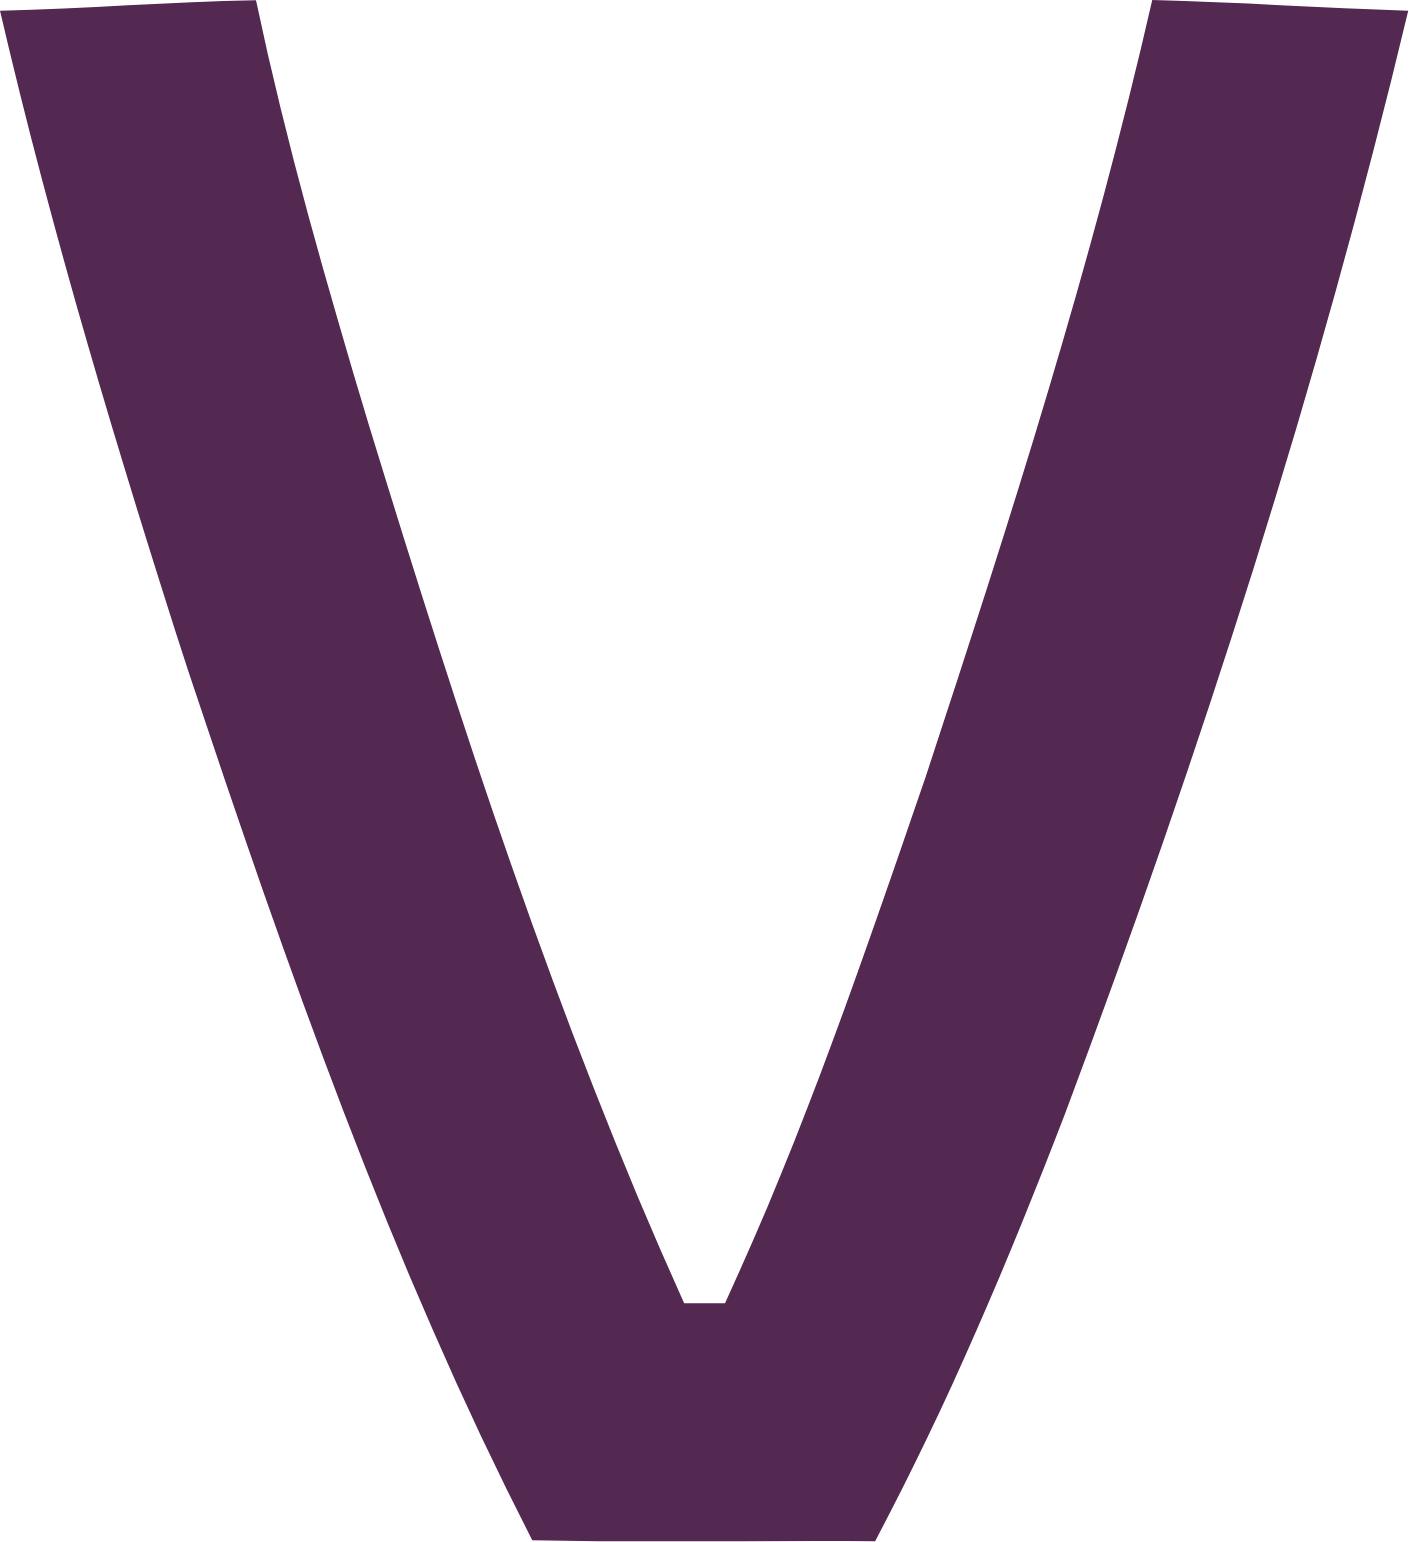 Vistry Group logo (transparent PNG)